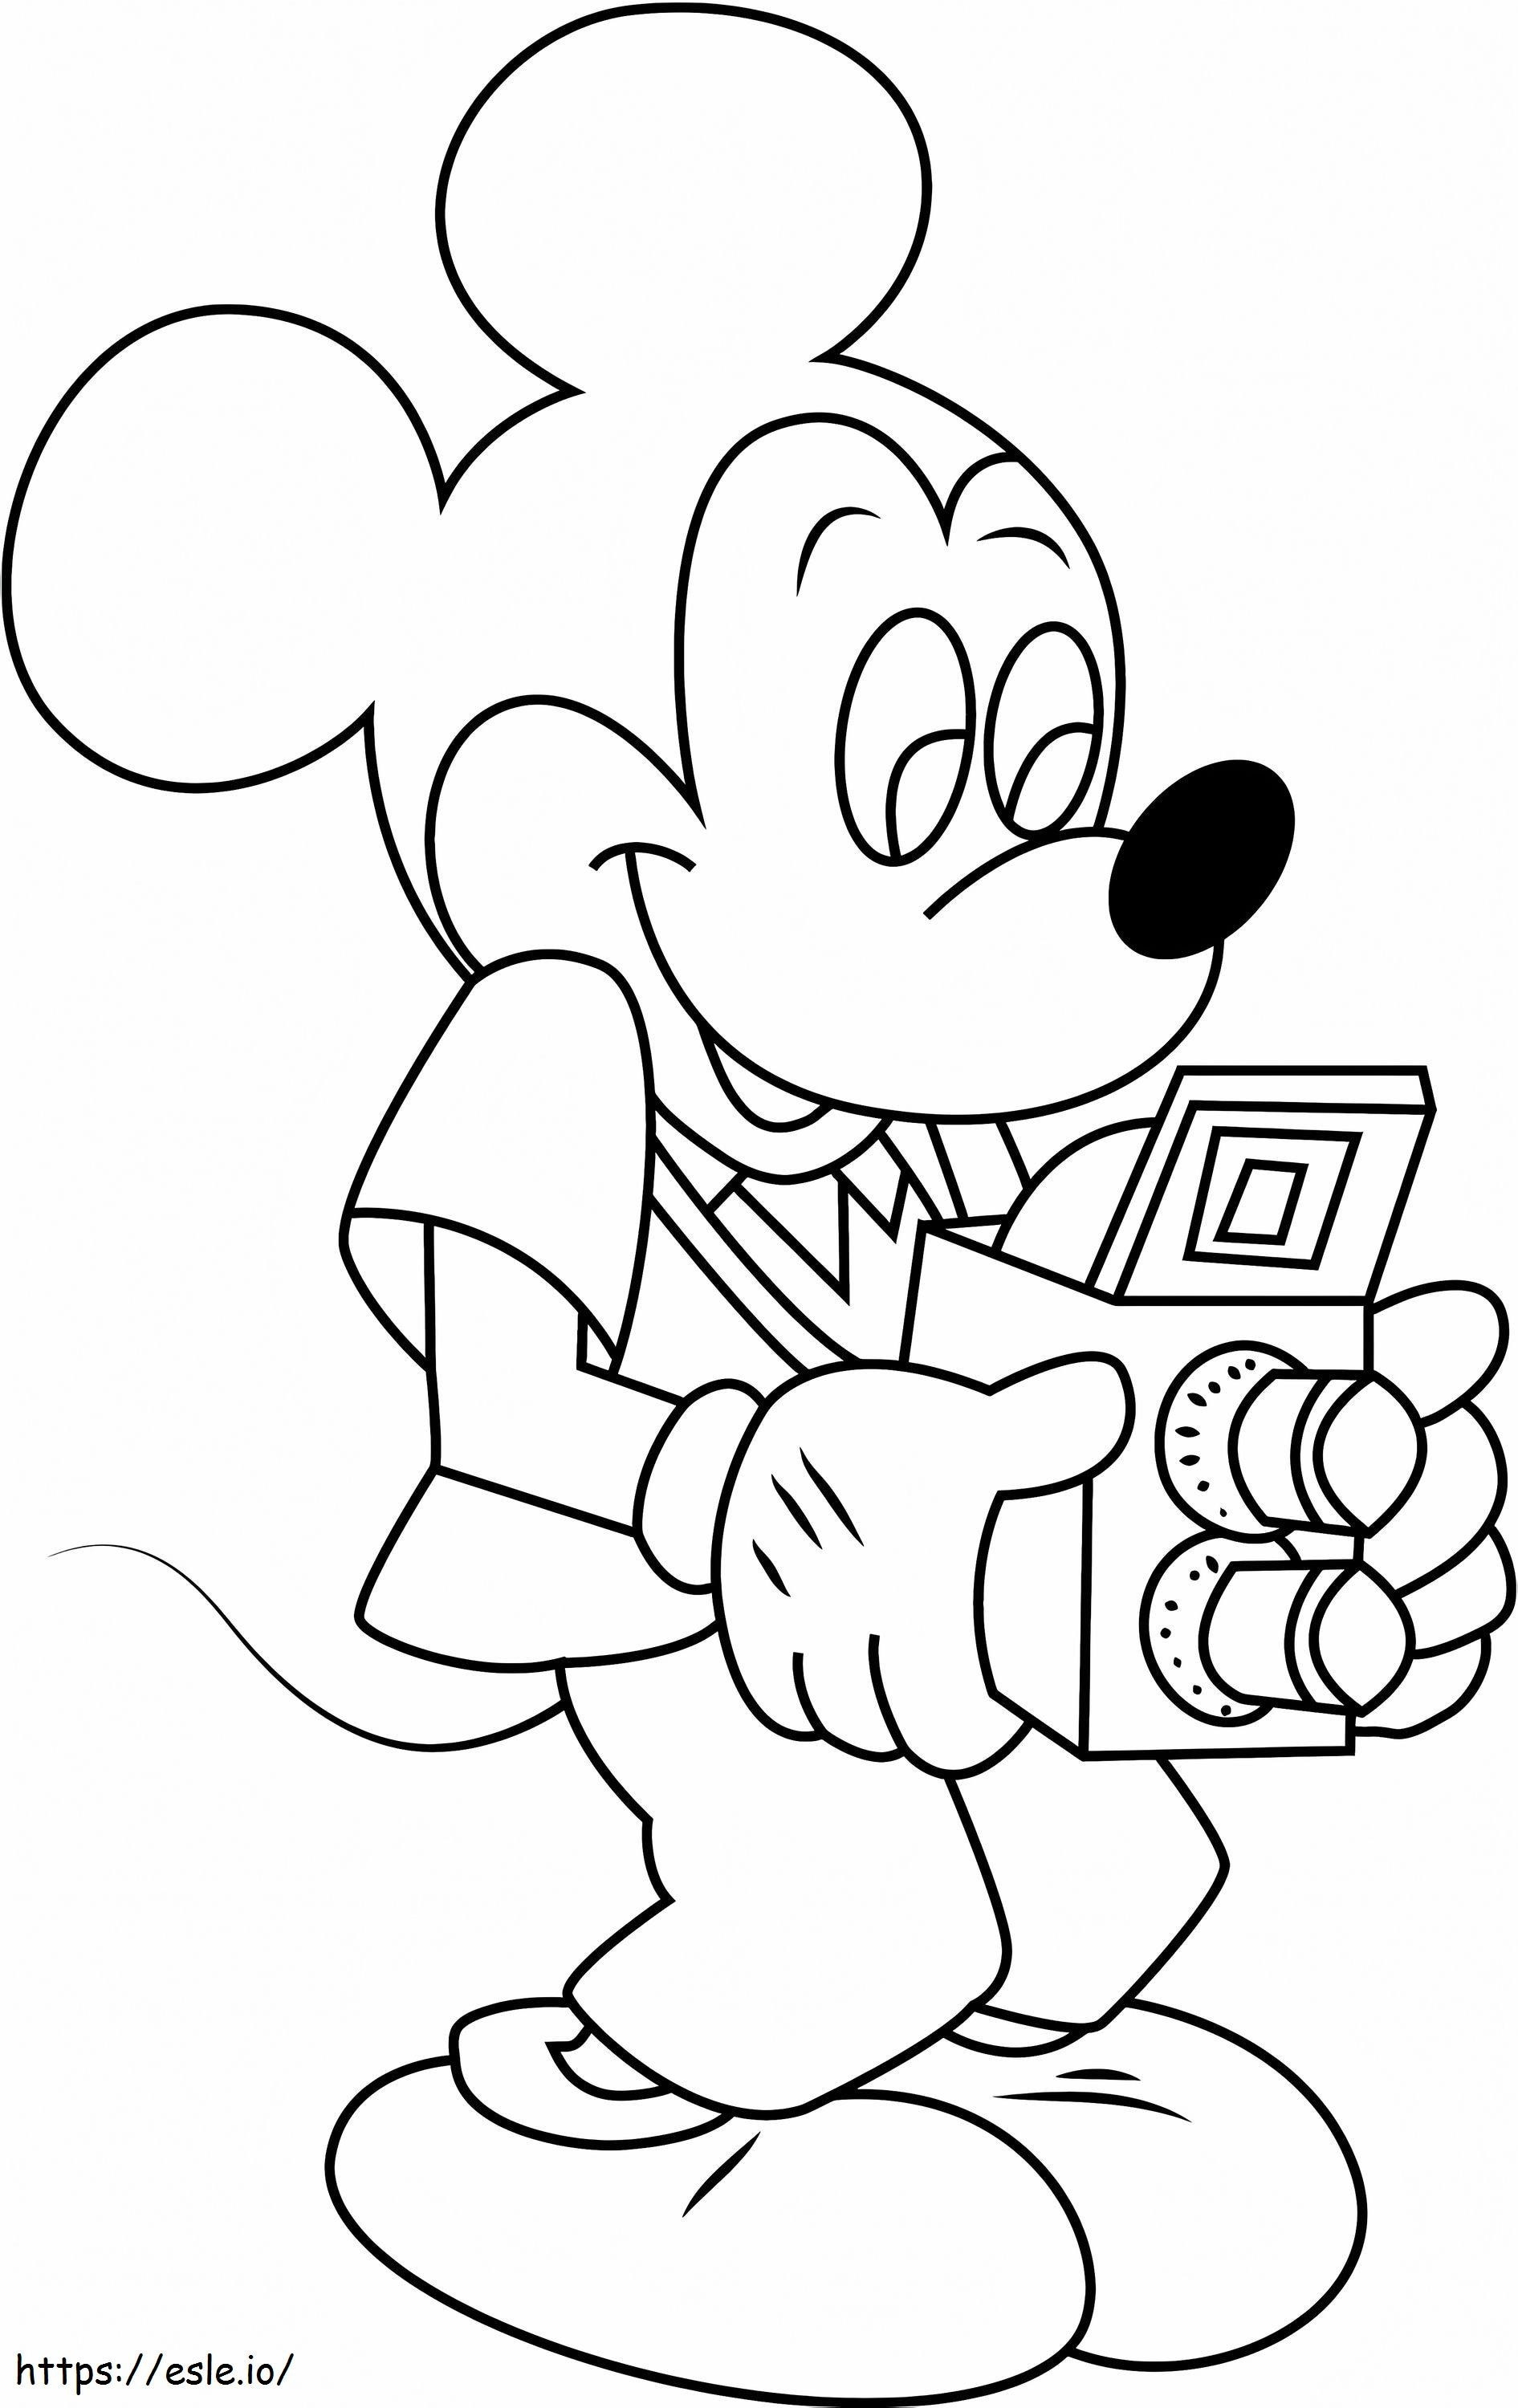 1530758312 Mickey Mouse Con Camaraa4 para colorear